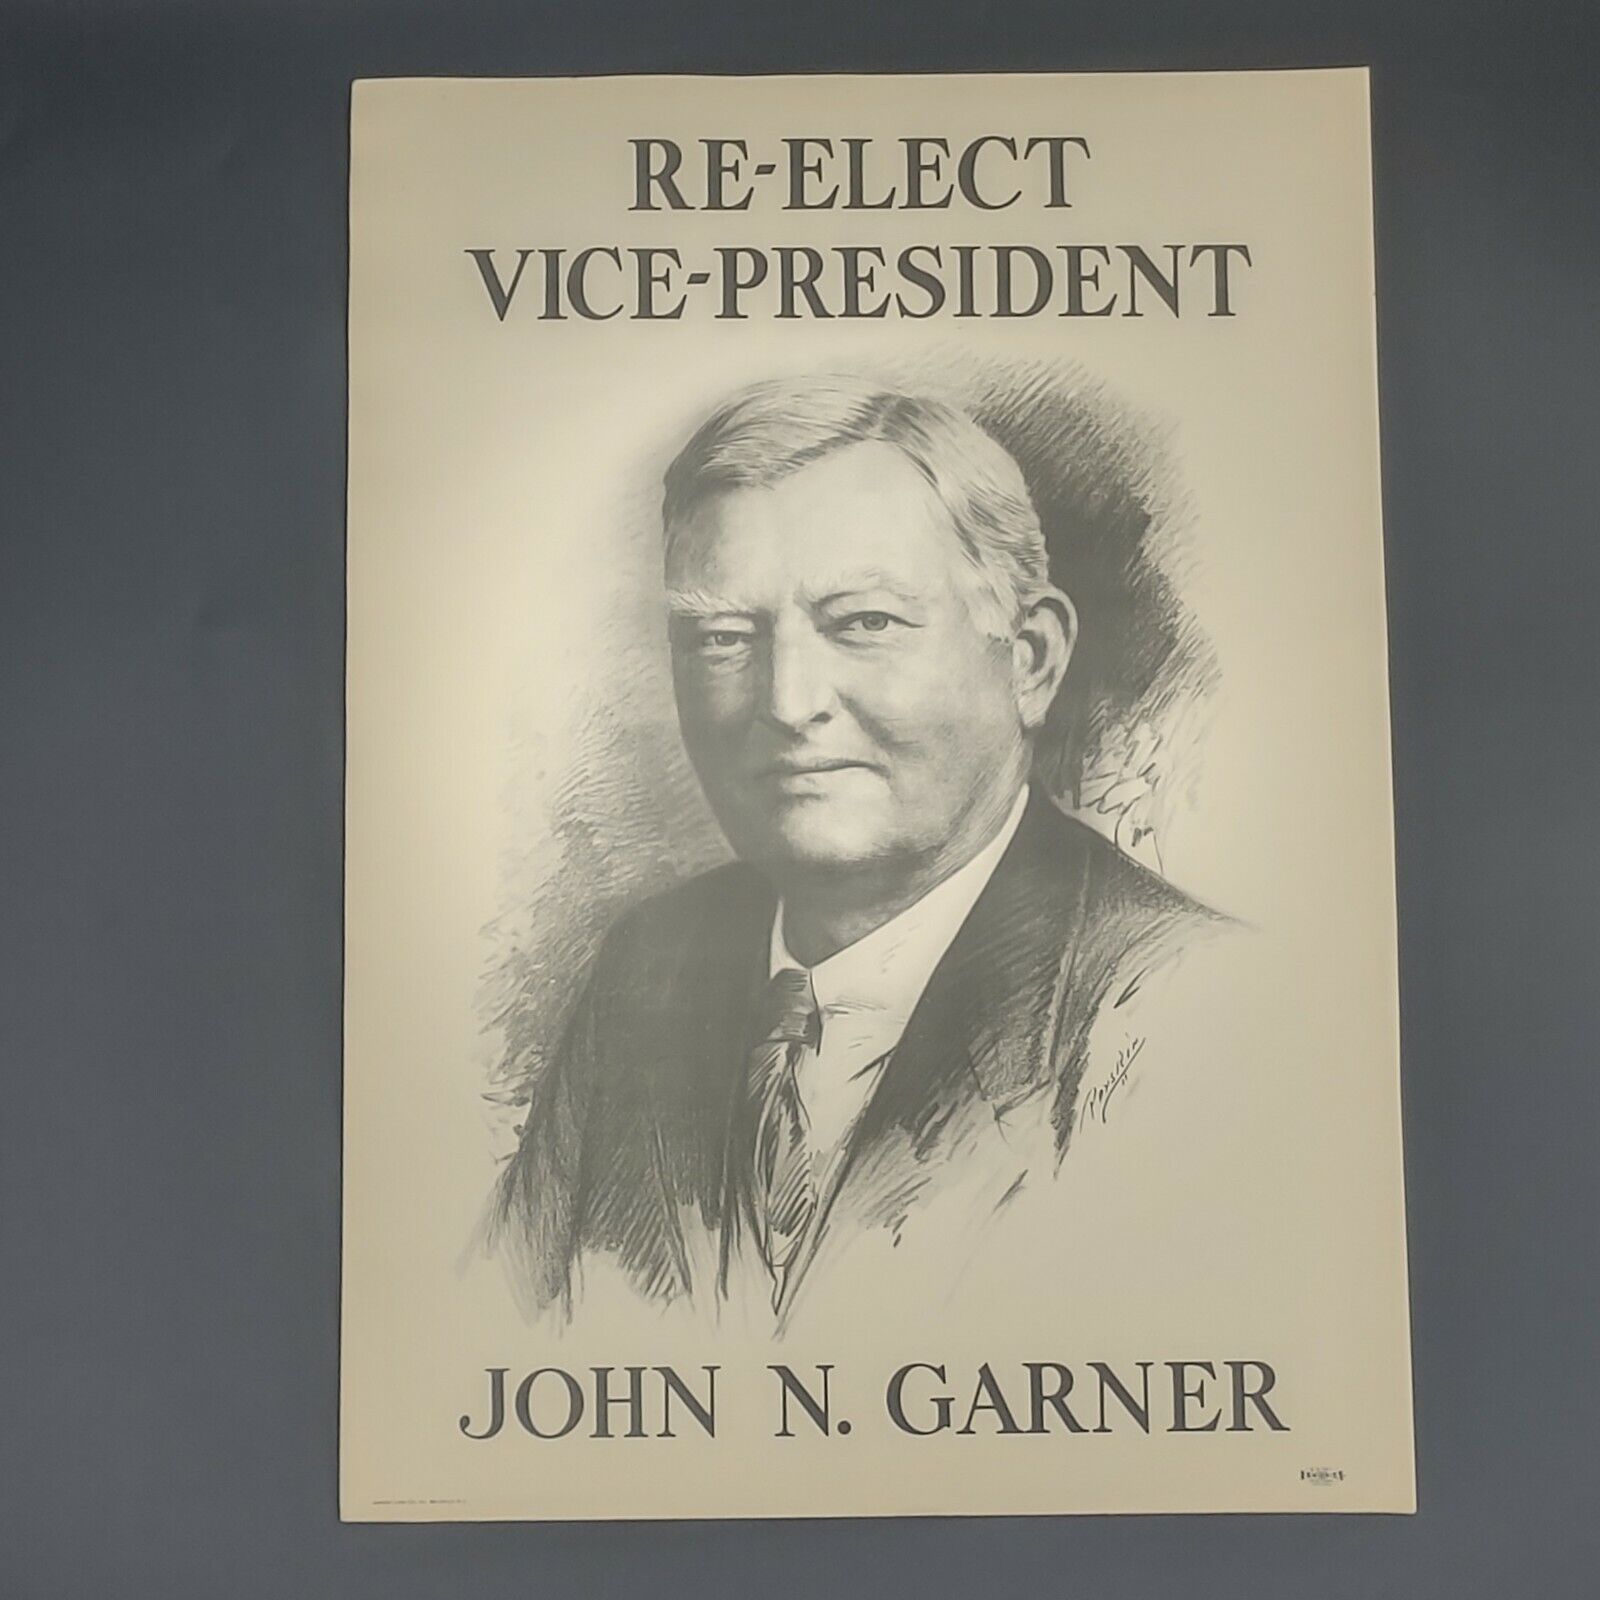 Original 1936 Political Poster Re Elect Vice President John N Garner Roosevelt